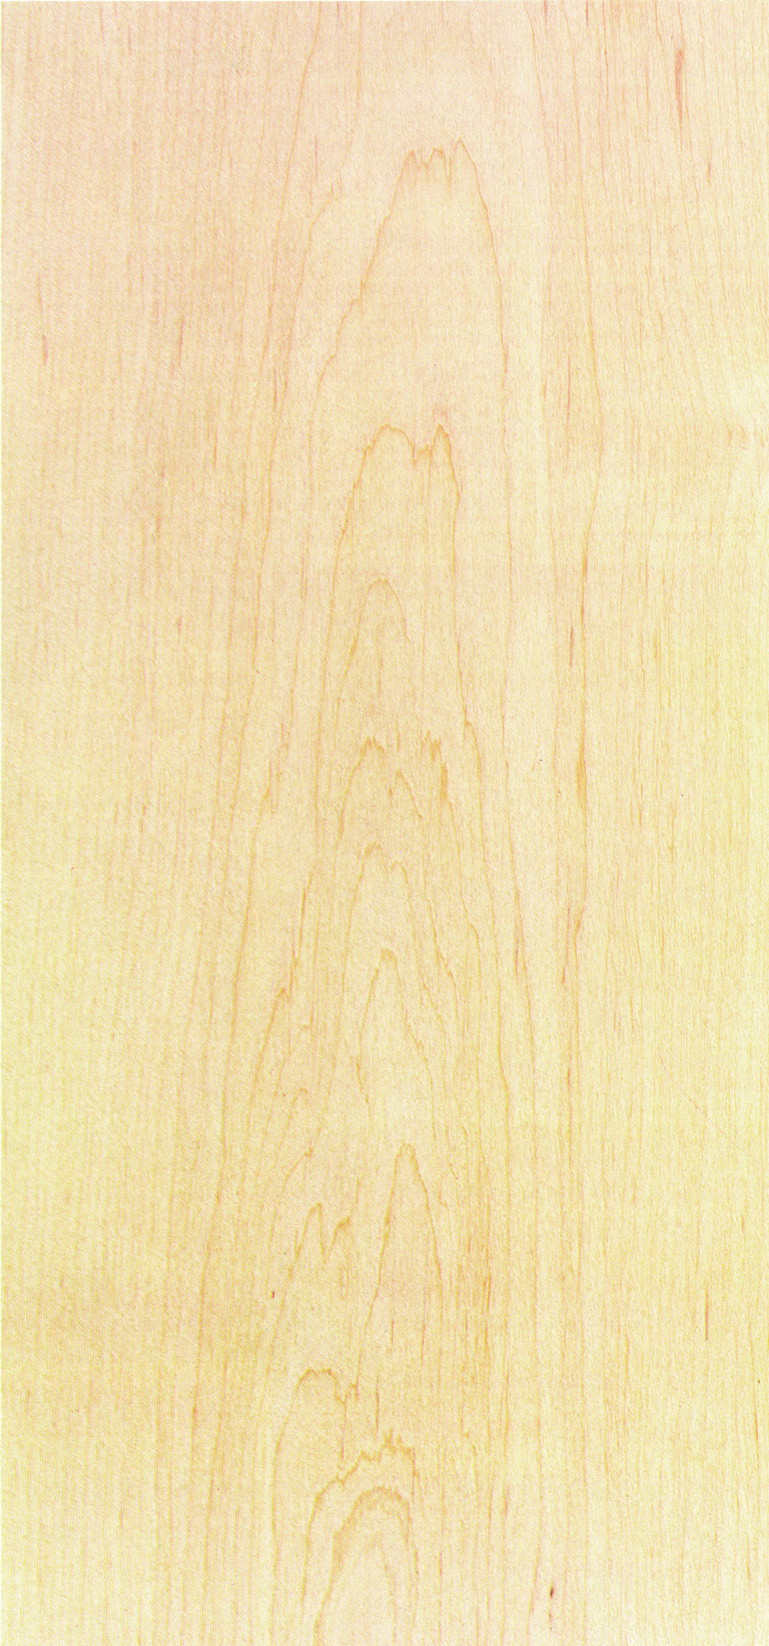 Dem Nachdunkeln des Holzes kann mit UV-Absorbern begegnet werden.